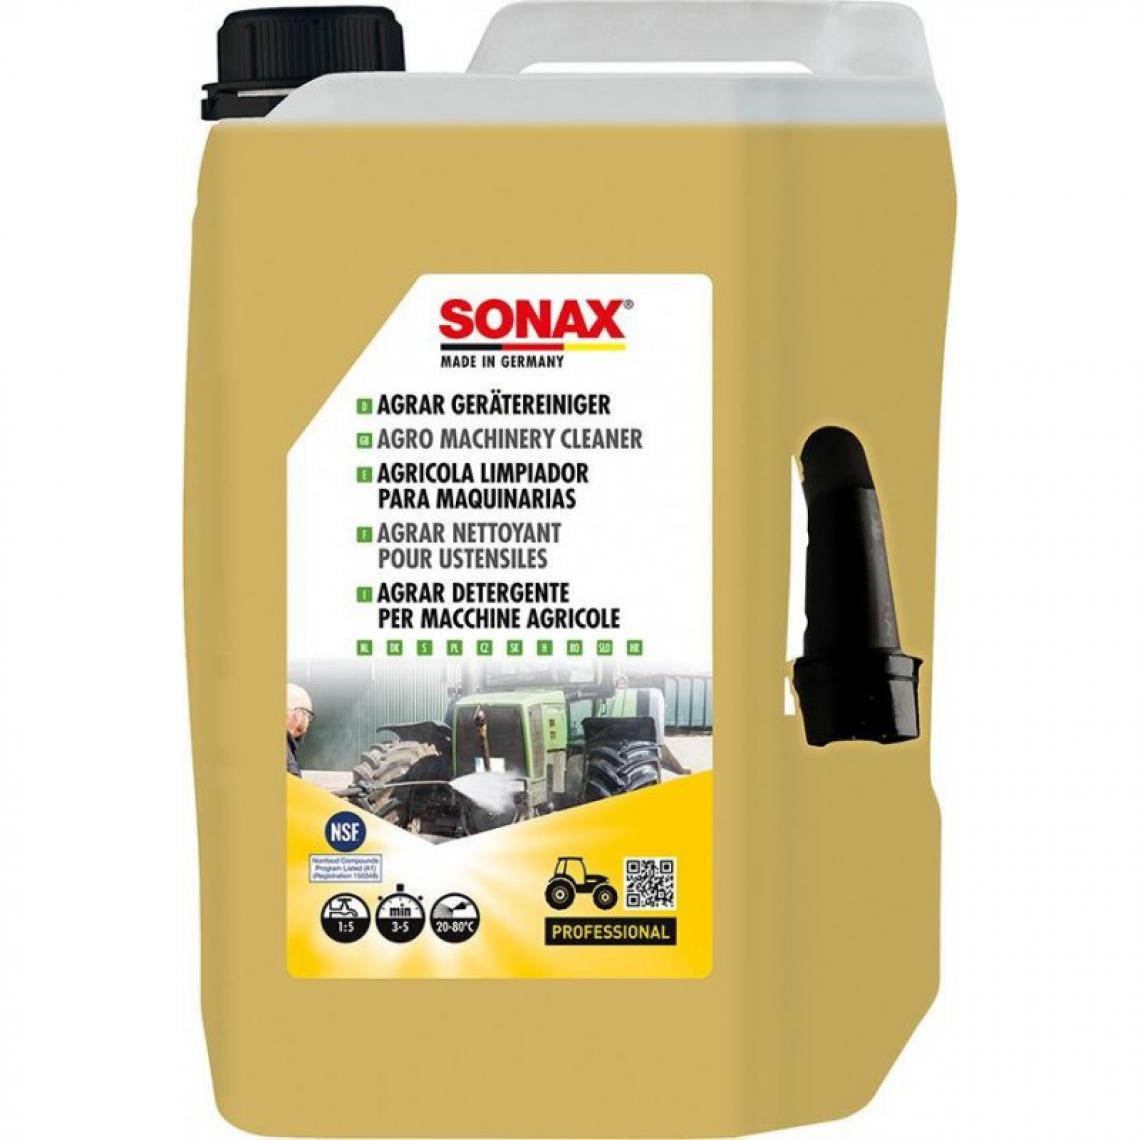 marque generique - Nettoyant pour ustensiles - SONAX AGRAR 5 l - Colle & adhésif